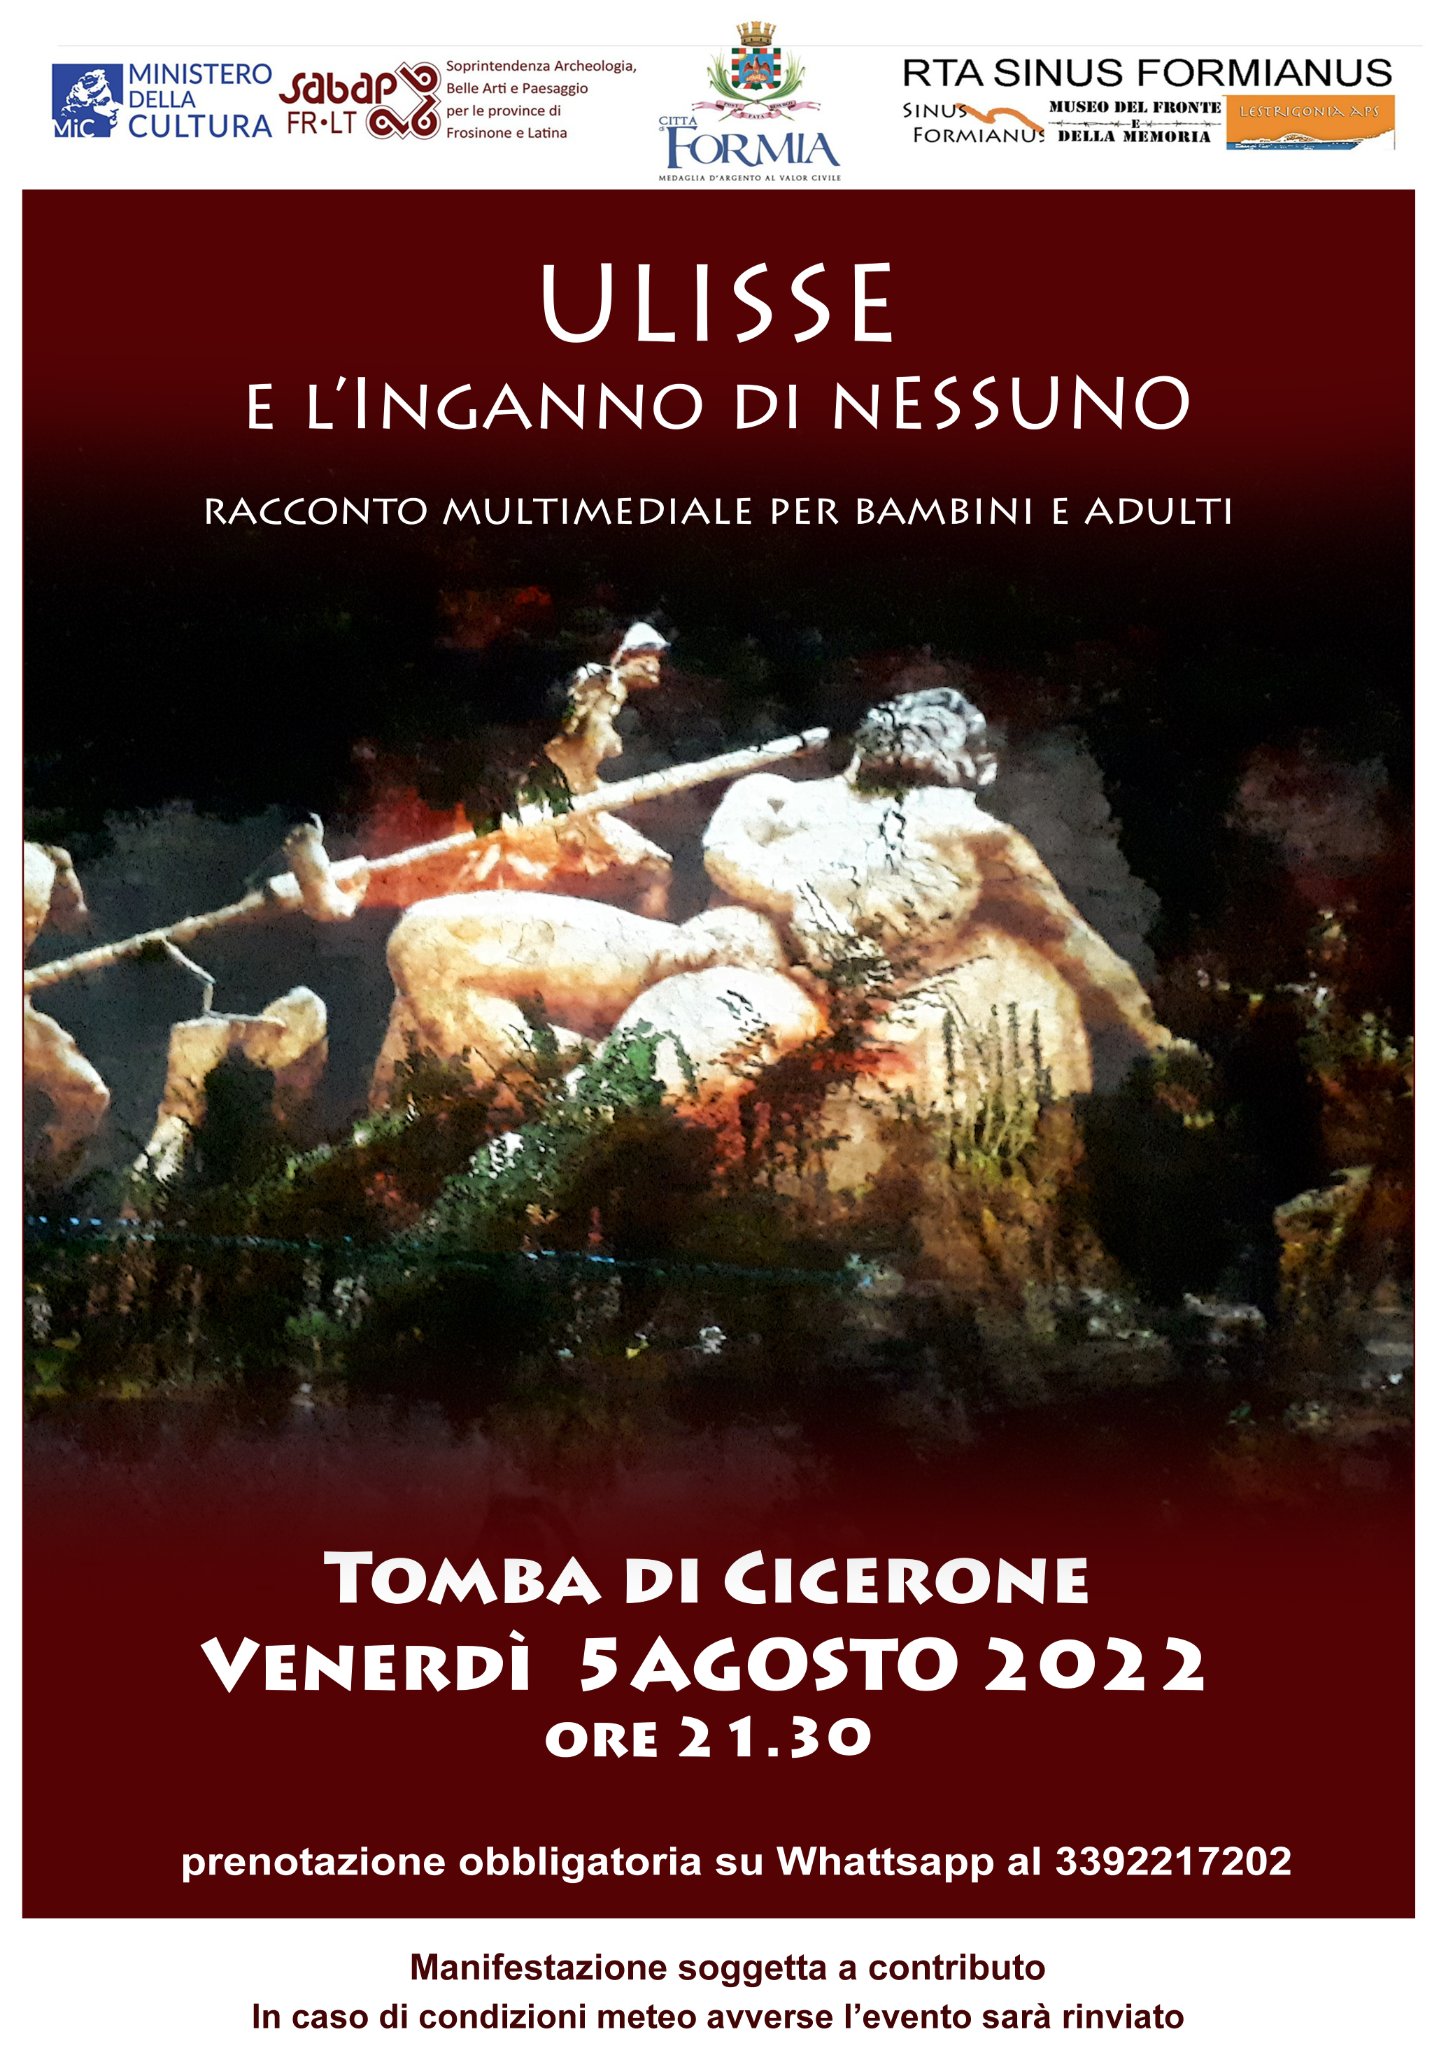 Ulisse e l'Inganno di Nessuno, racconto multimediale per bambini e adulti  alla Tomba di Cicerone